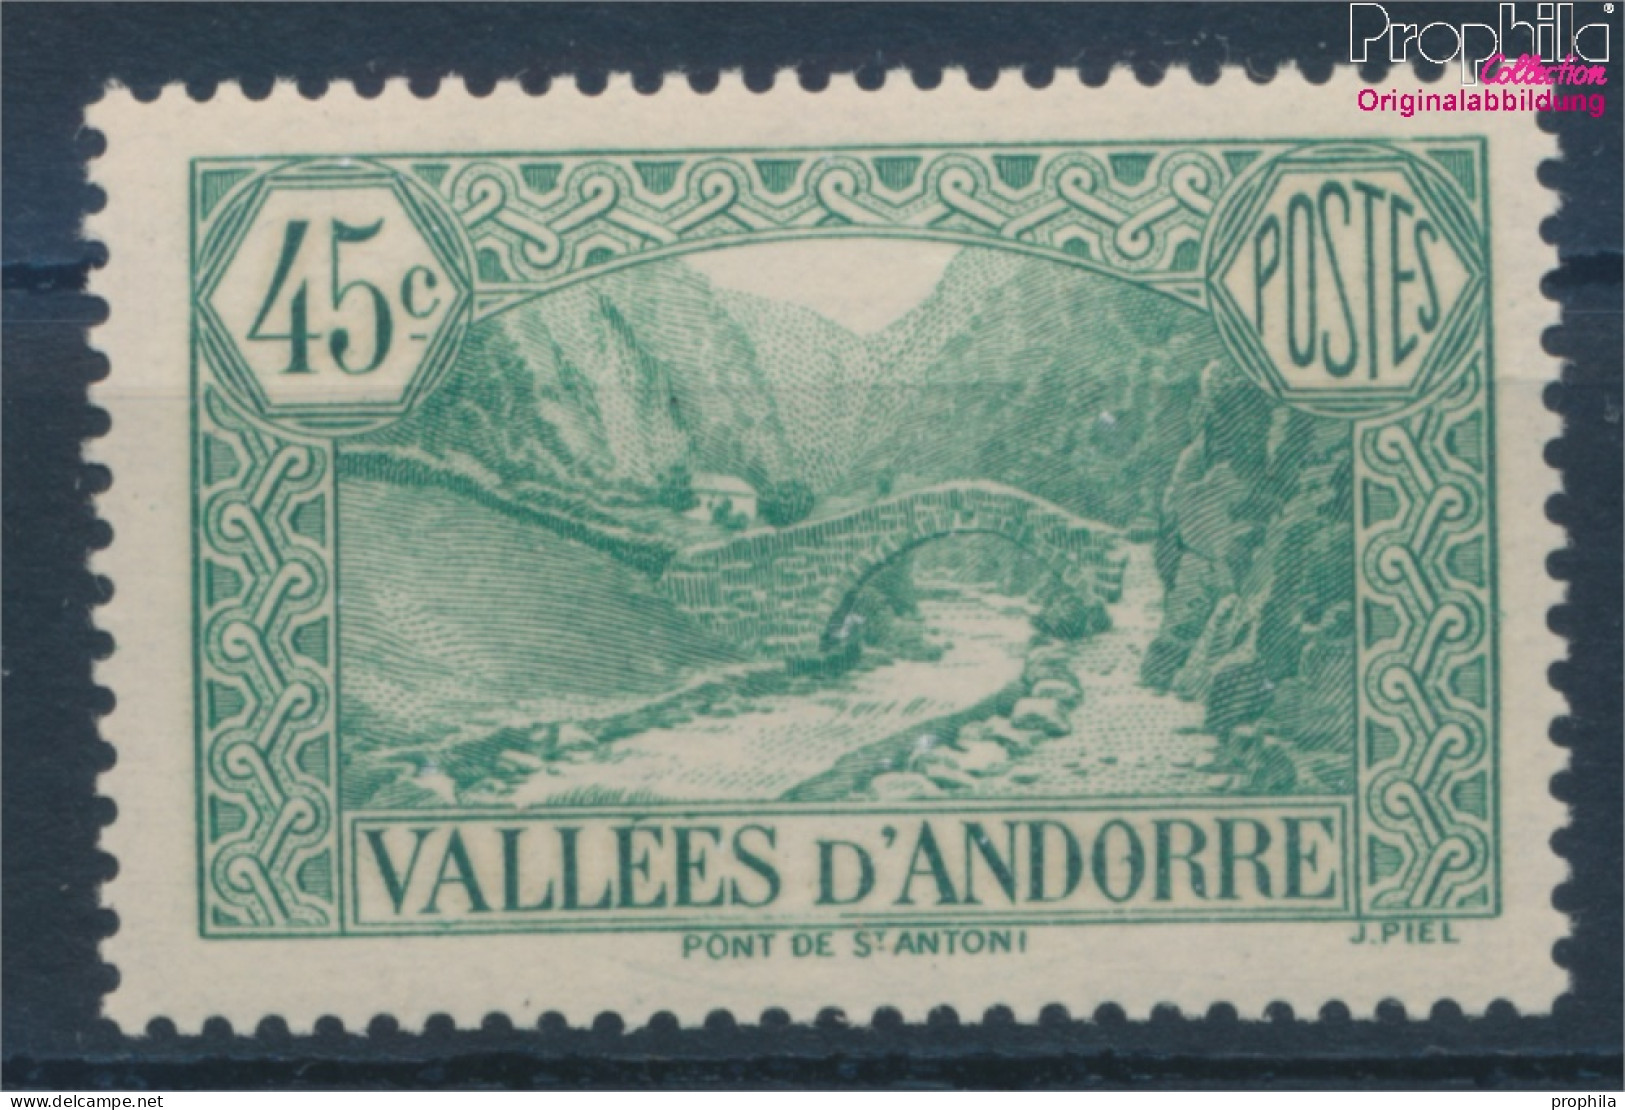 Andorra - Französische Post 60 Mit Falz 1937 Landschaften (10363019 - Neufs